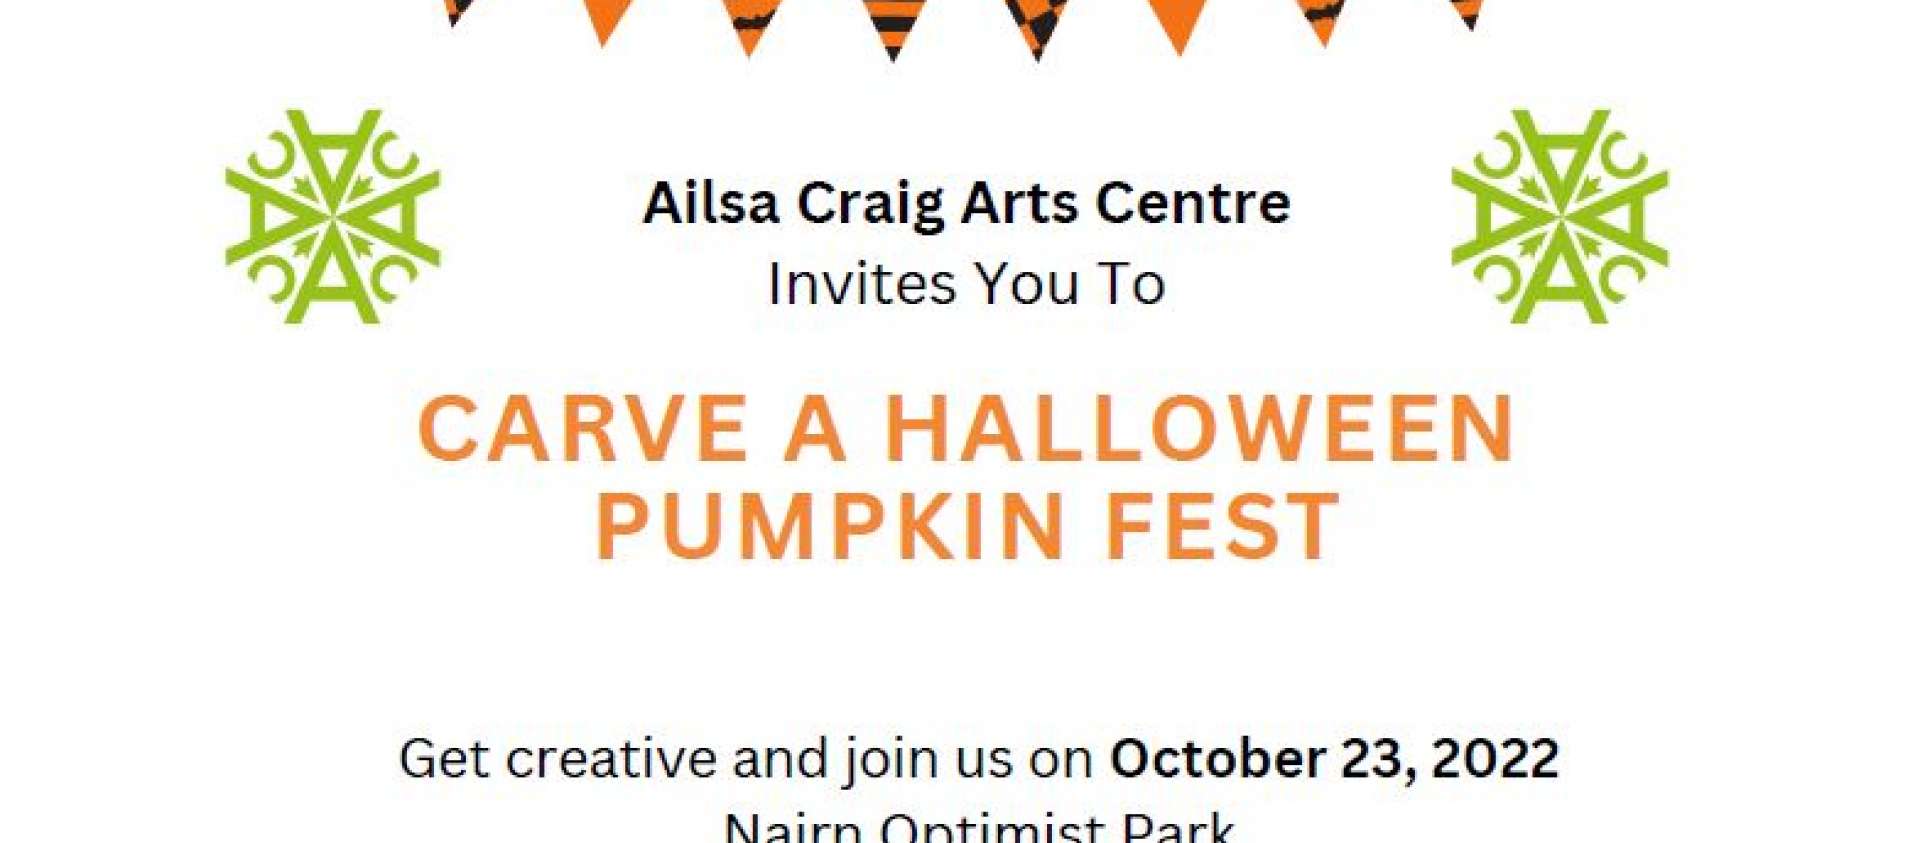 Carve a Halloween Pumpkin Fest